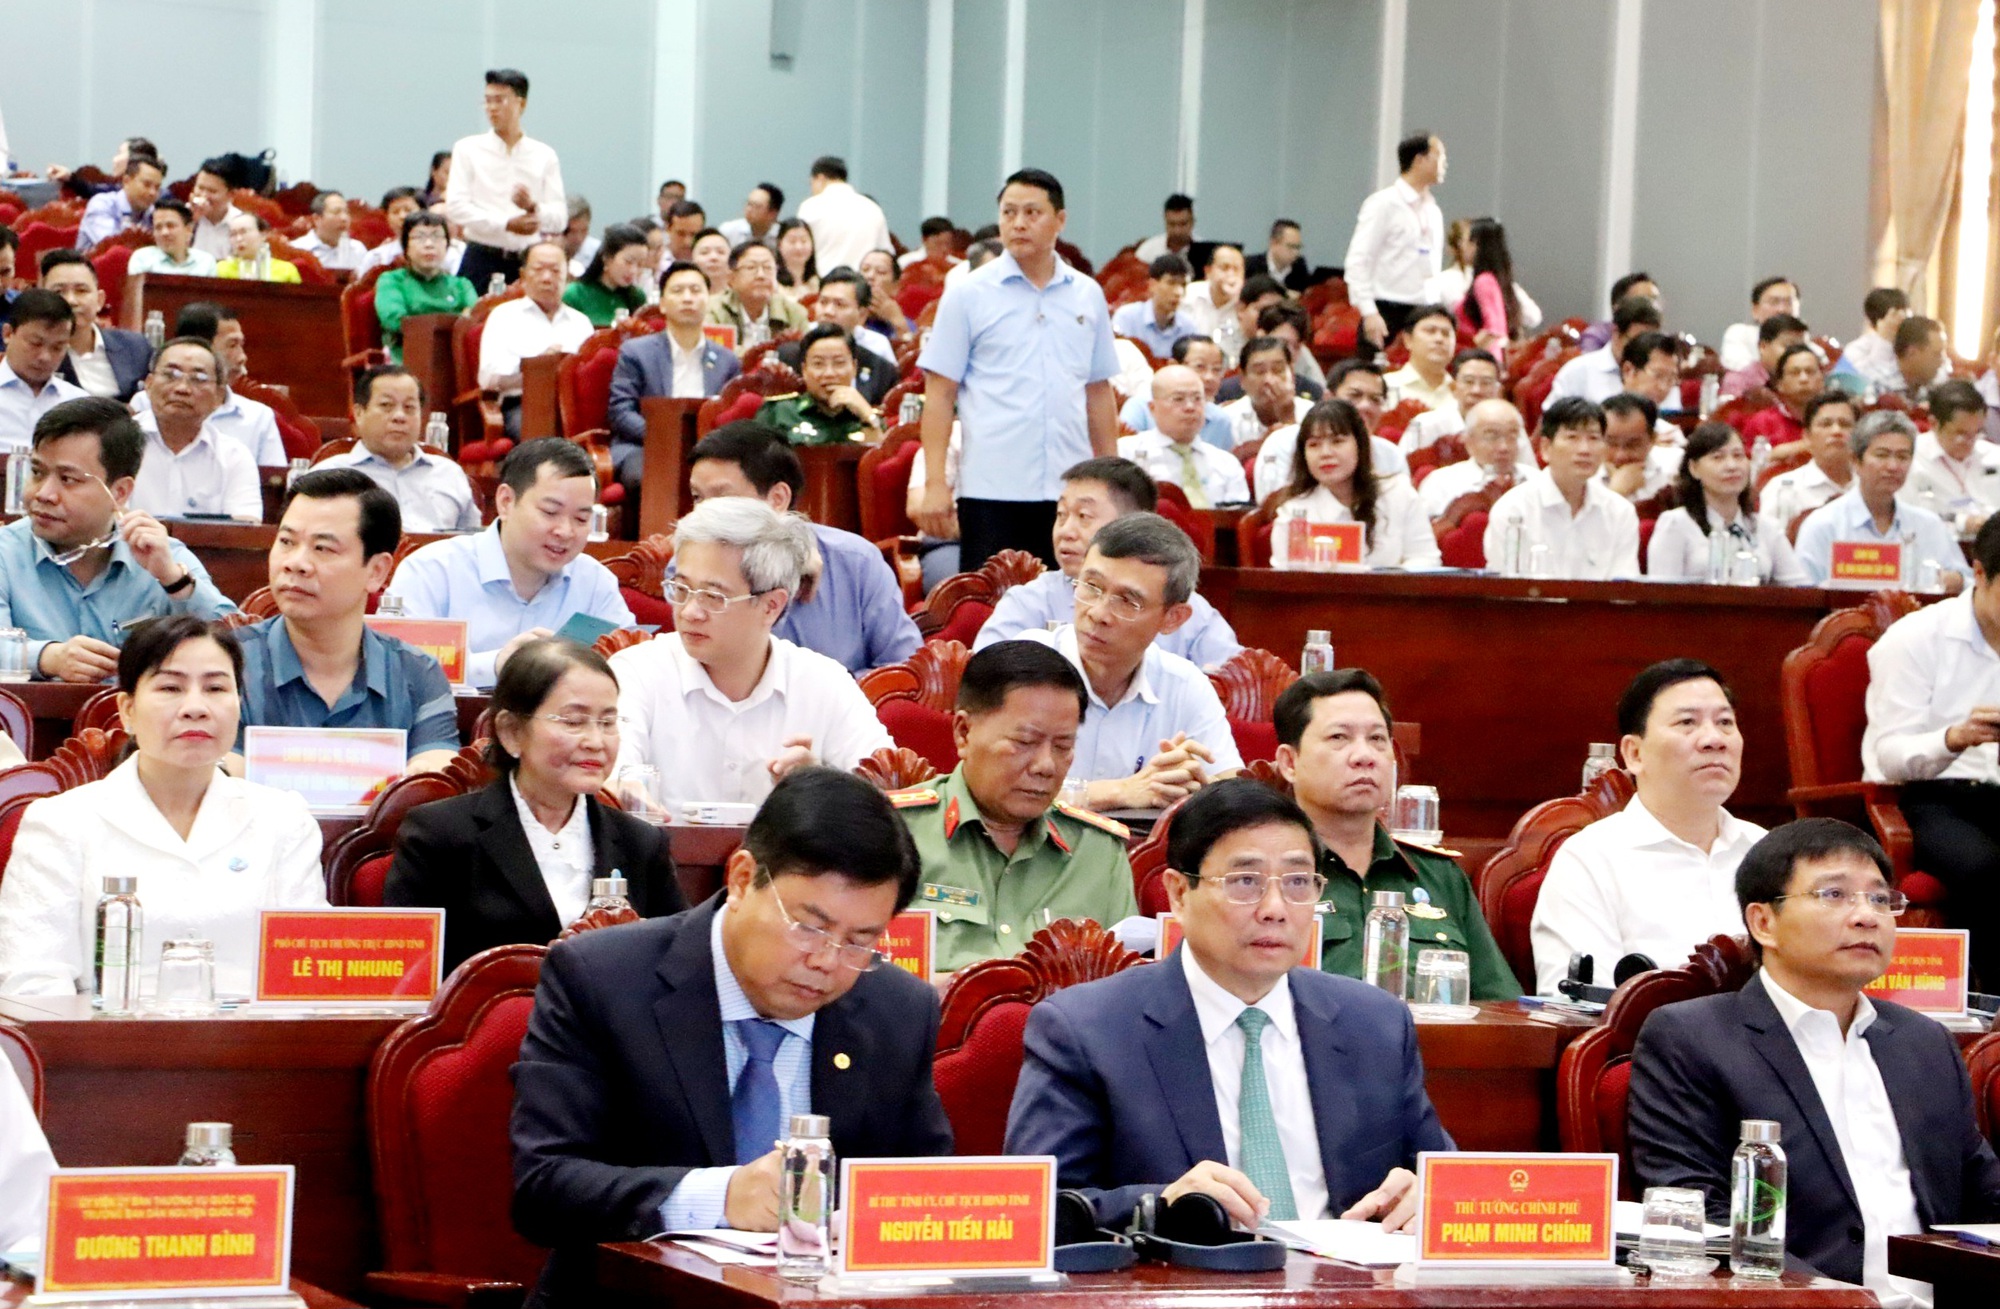 Thủ tướng Chính phủ Phạm Minh Chính dự Hội nghị công bố Quy hoạch và xúc tiến đầu tư tại Cà Mau - Ảnh 4.